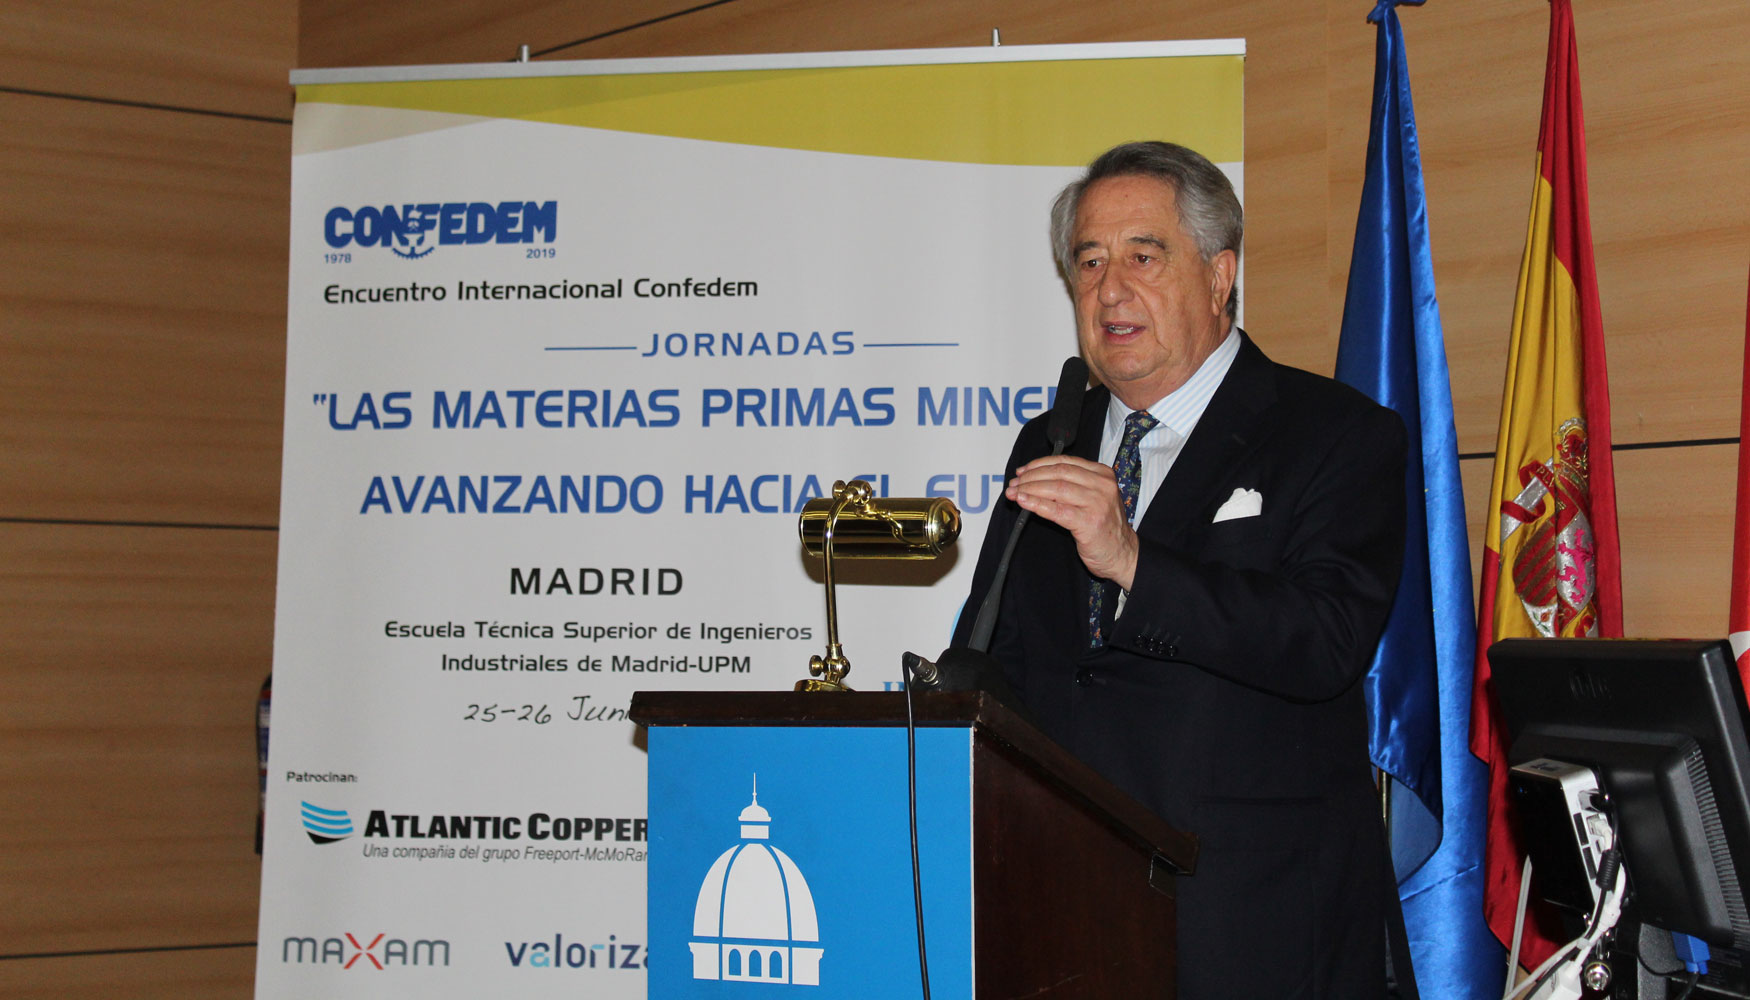 Javier Targhetta Roza, consejero delegado de Atlantic Copper y vicepresidente de Confedem, en la inauguracin del Foro Internacional Confedem...